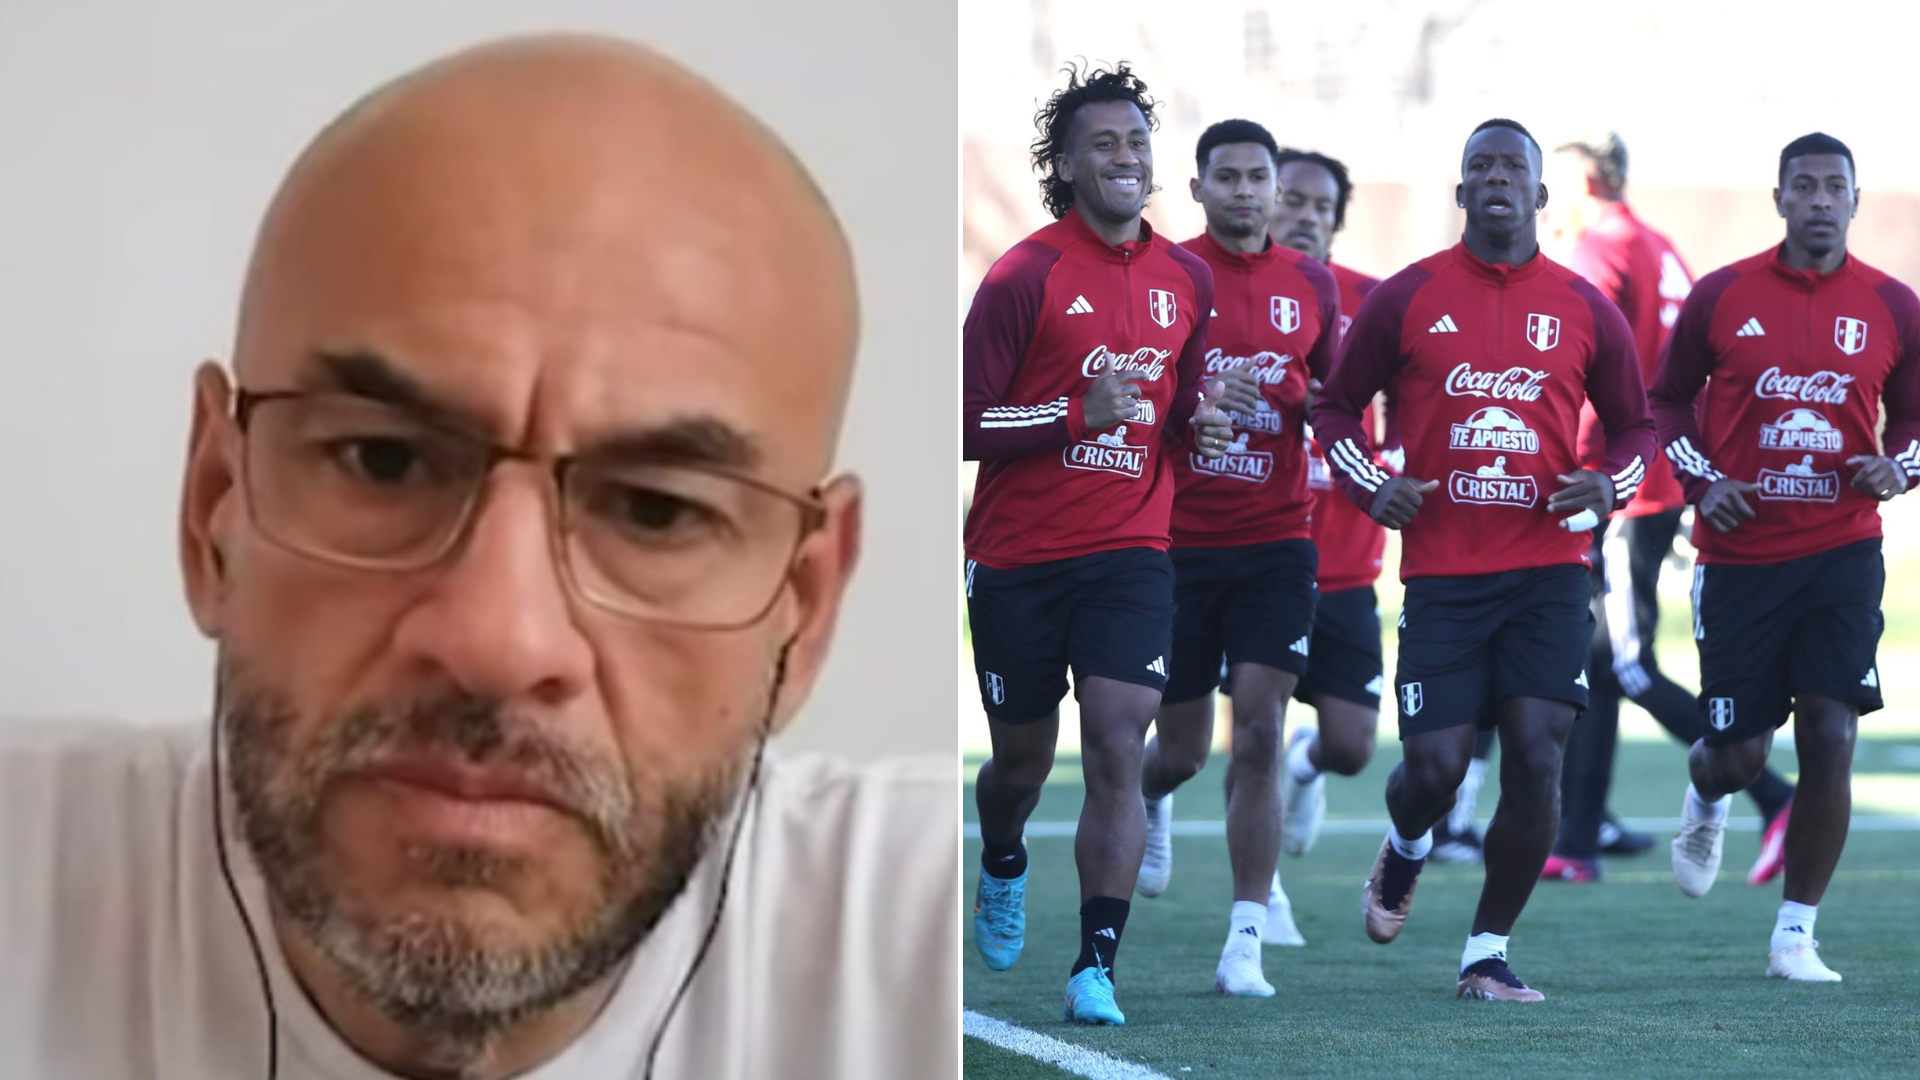 Peter Arévalo y la exigencia de la selección peruana en las Eliminatorias: “No le voy a pedir que juegue lindo”